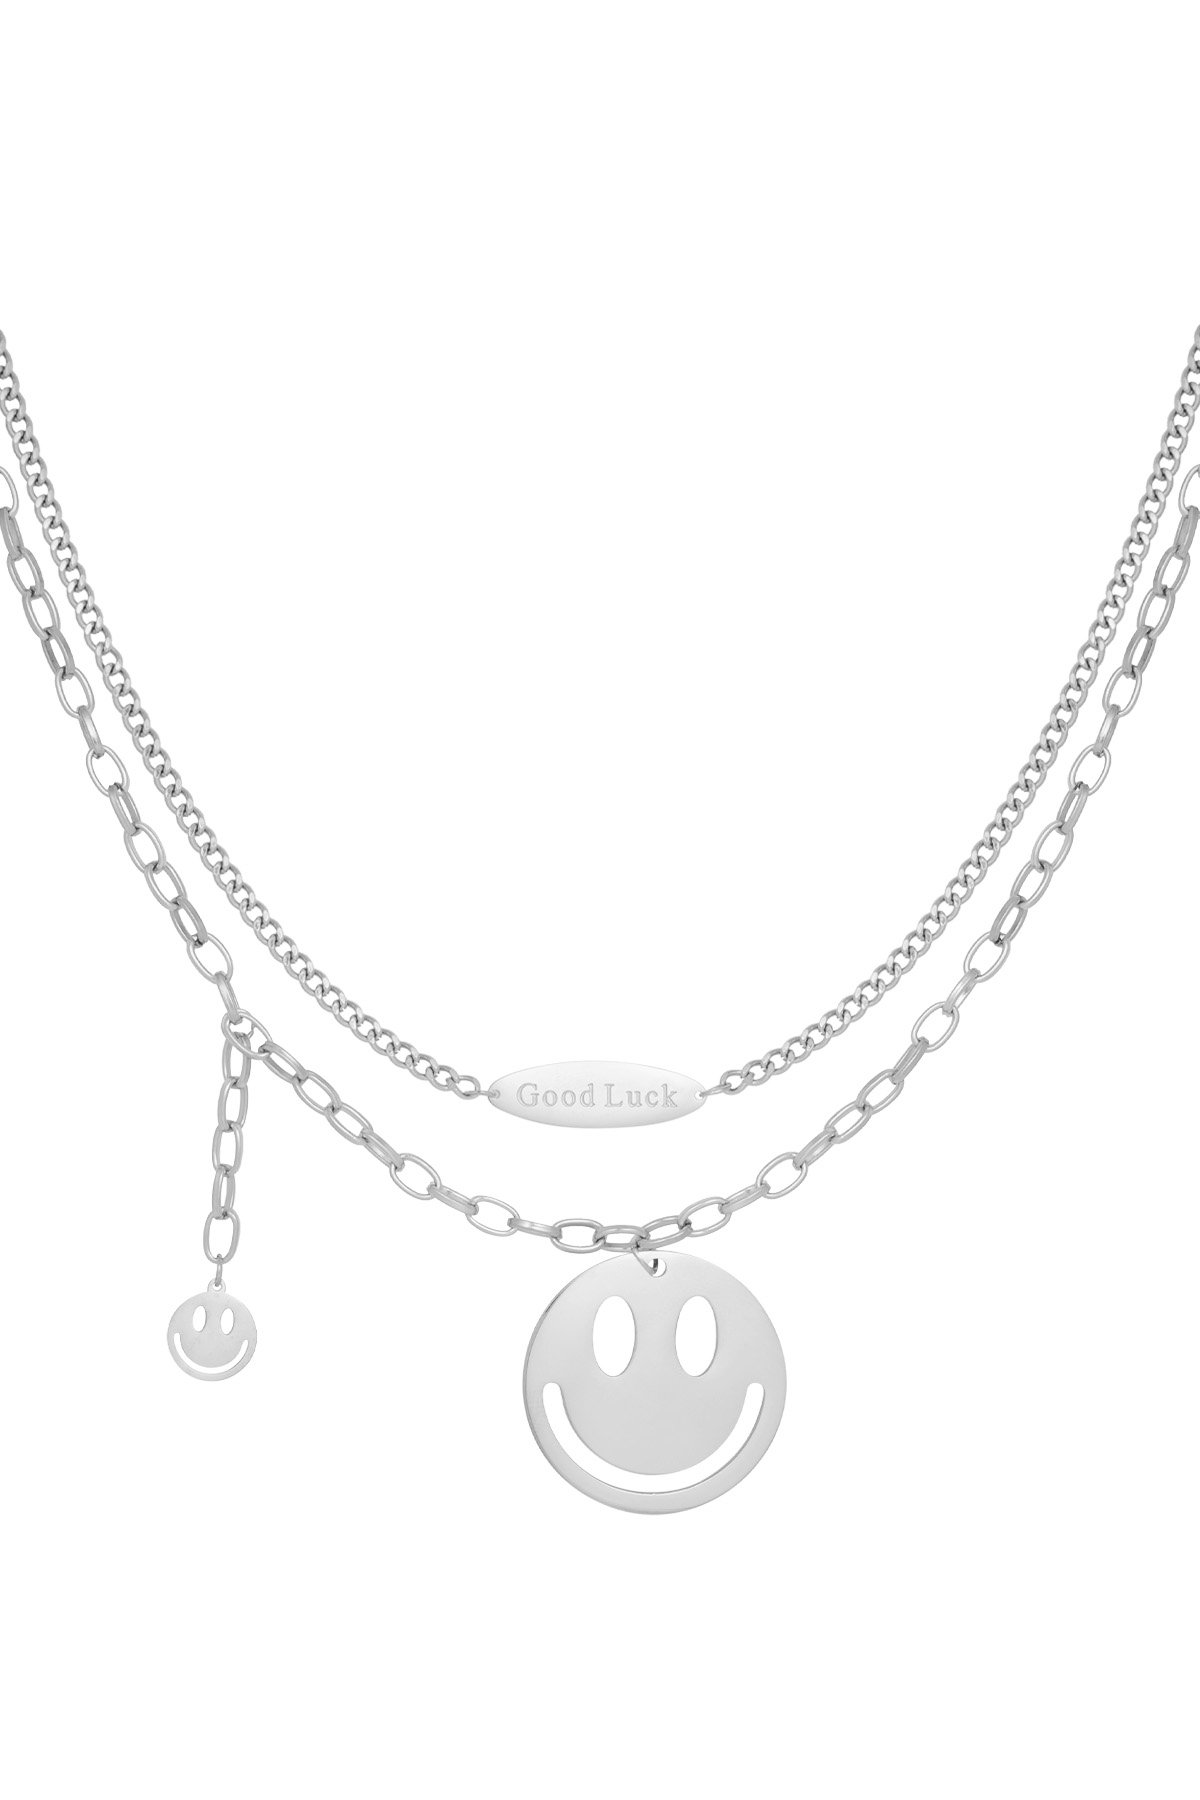 Happy life necklace - silver